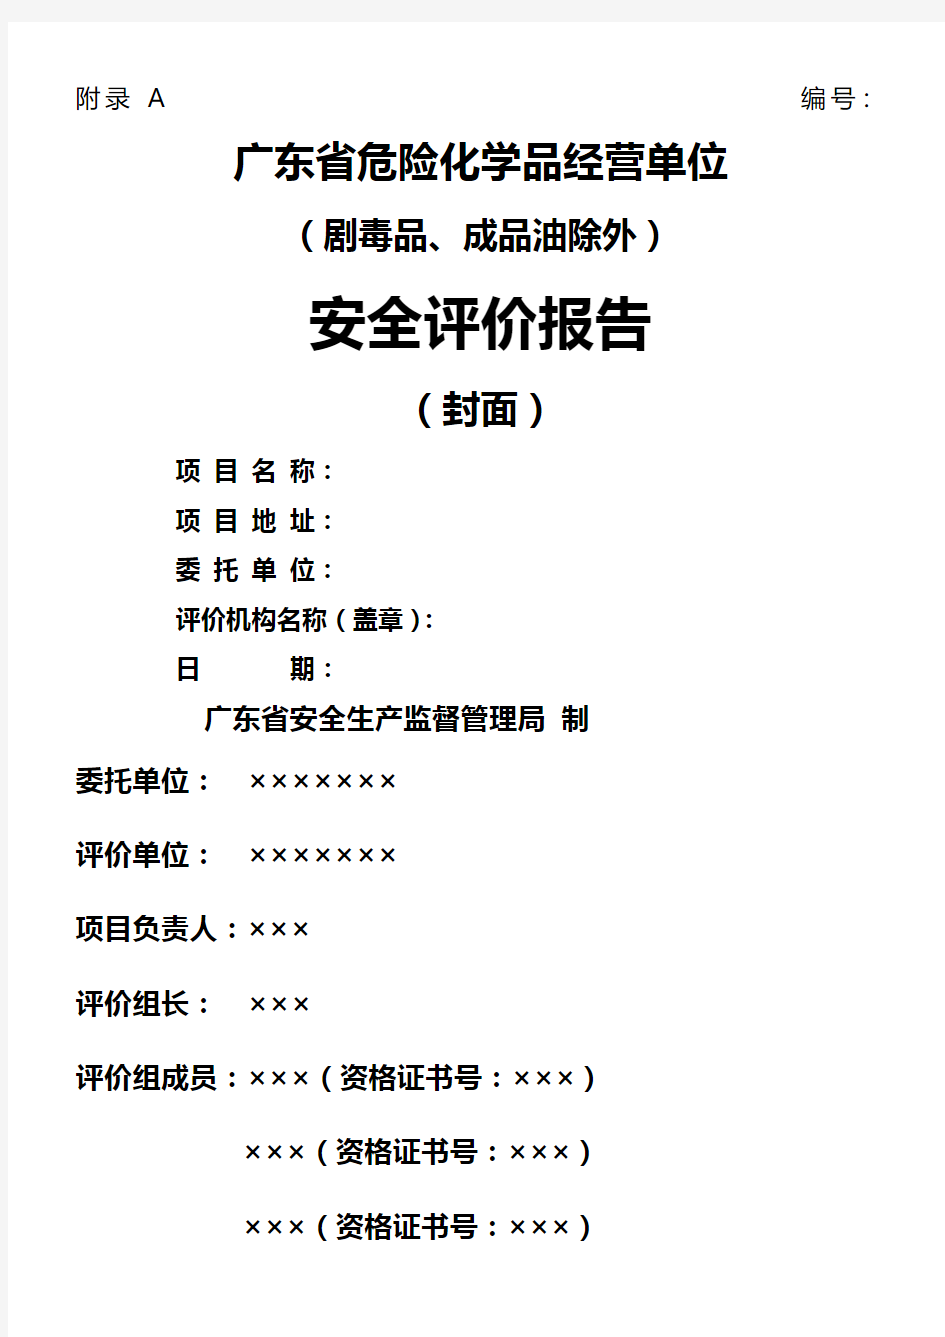 广东省危险化学品经营单位(剧毒品、成品油除外)安全评价报告式样